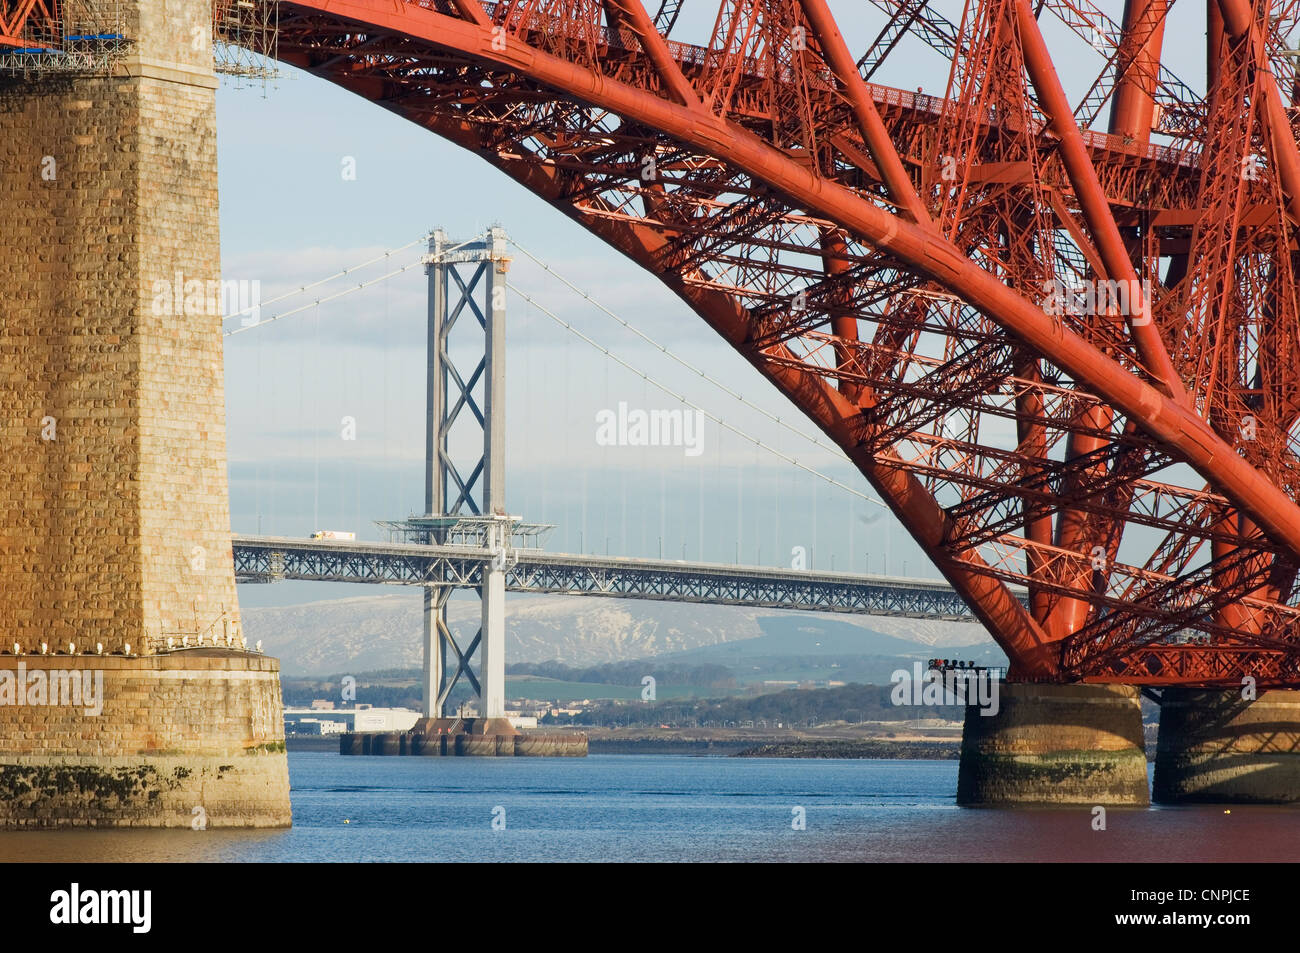 The Forth Road Bridge viewed through an arch of the Forth Rail Bridge, near Edinburgh, Scotland. Stock Photo